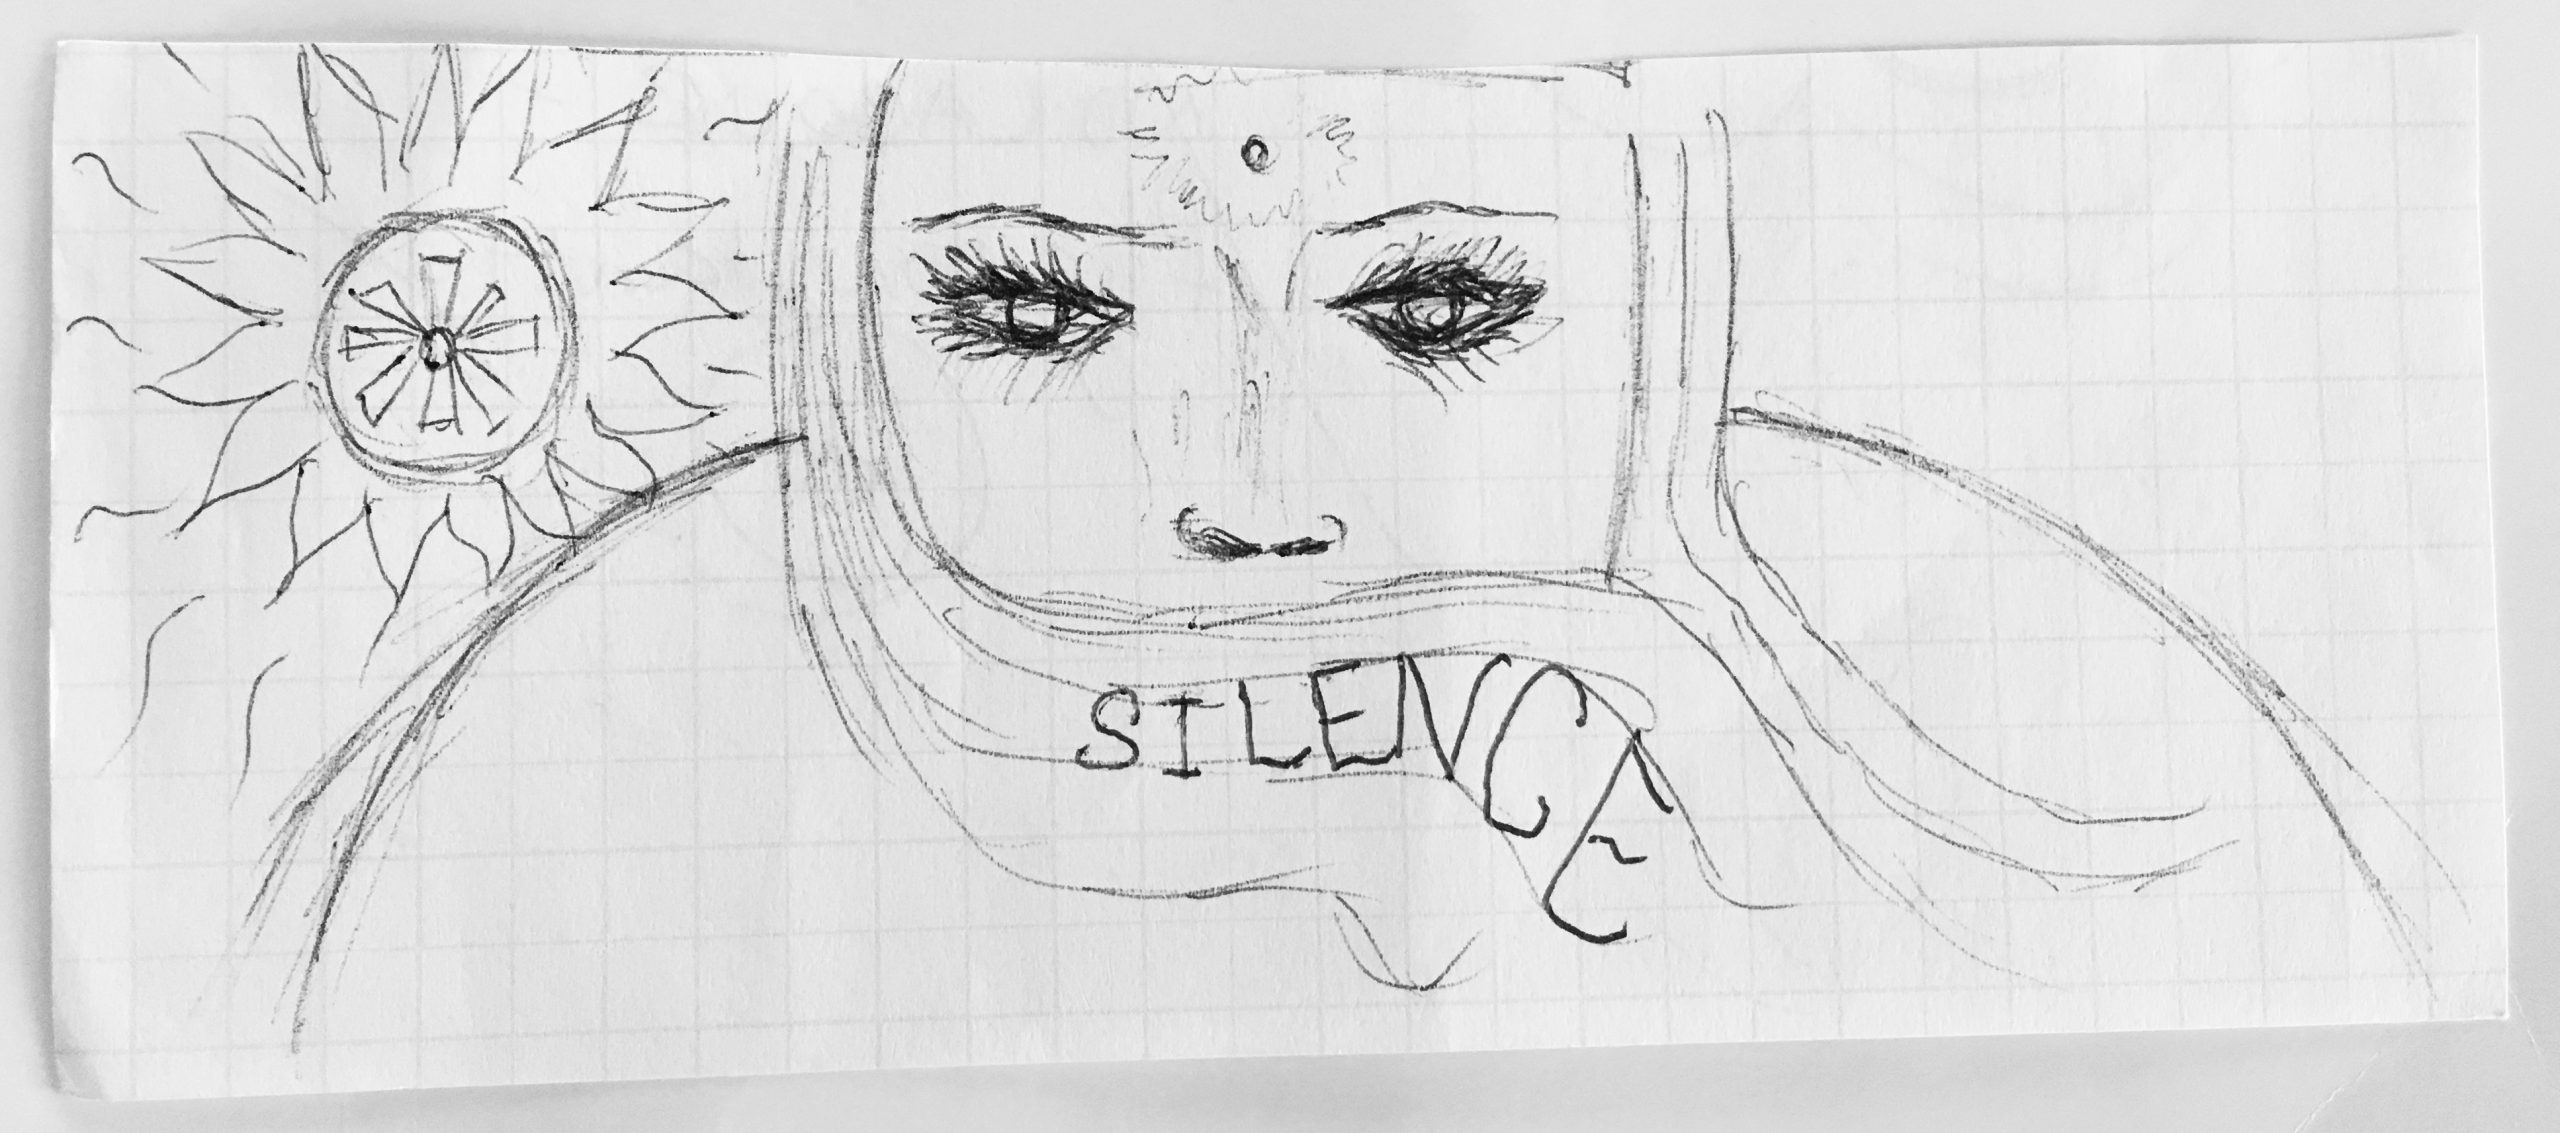 SILENCE